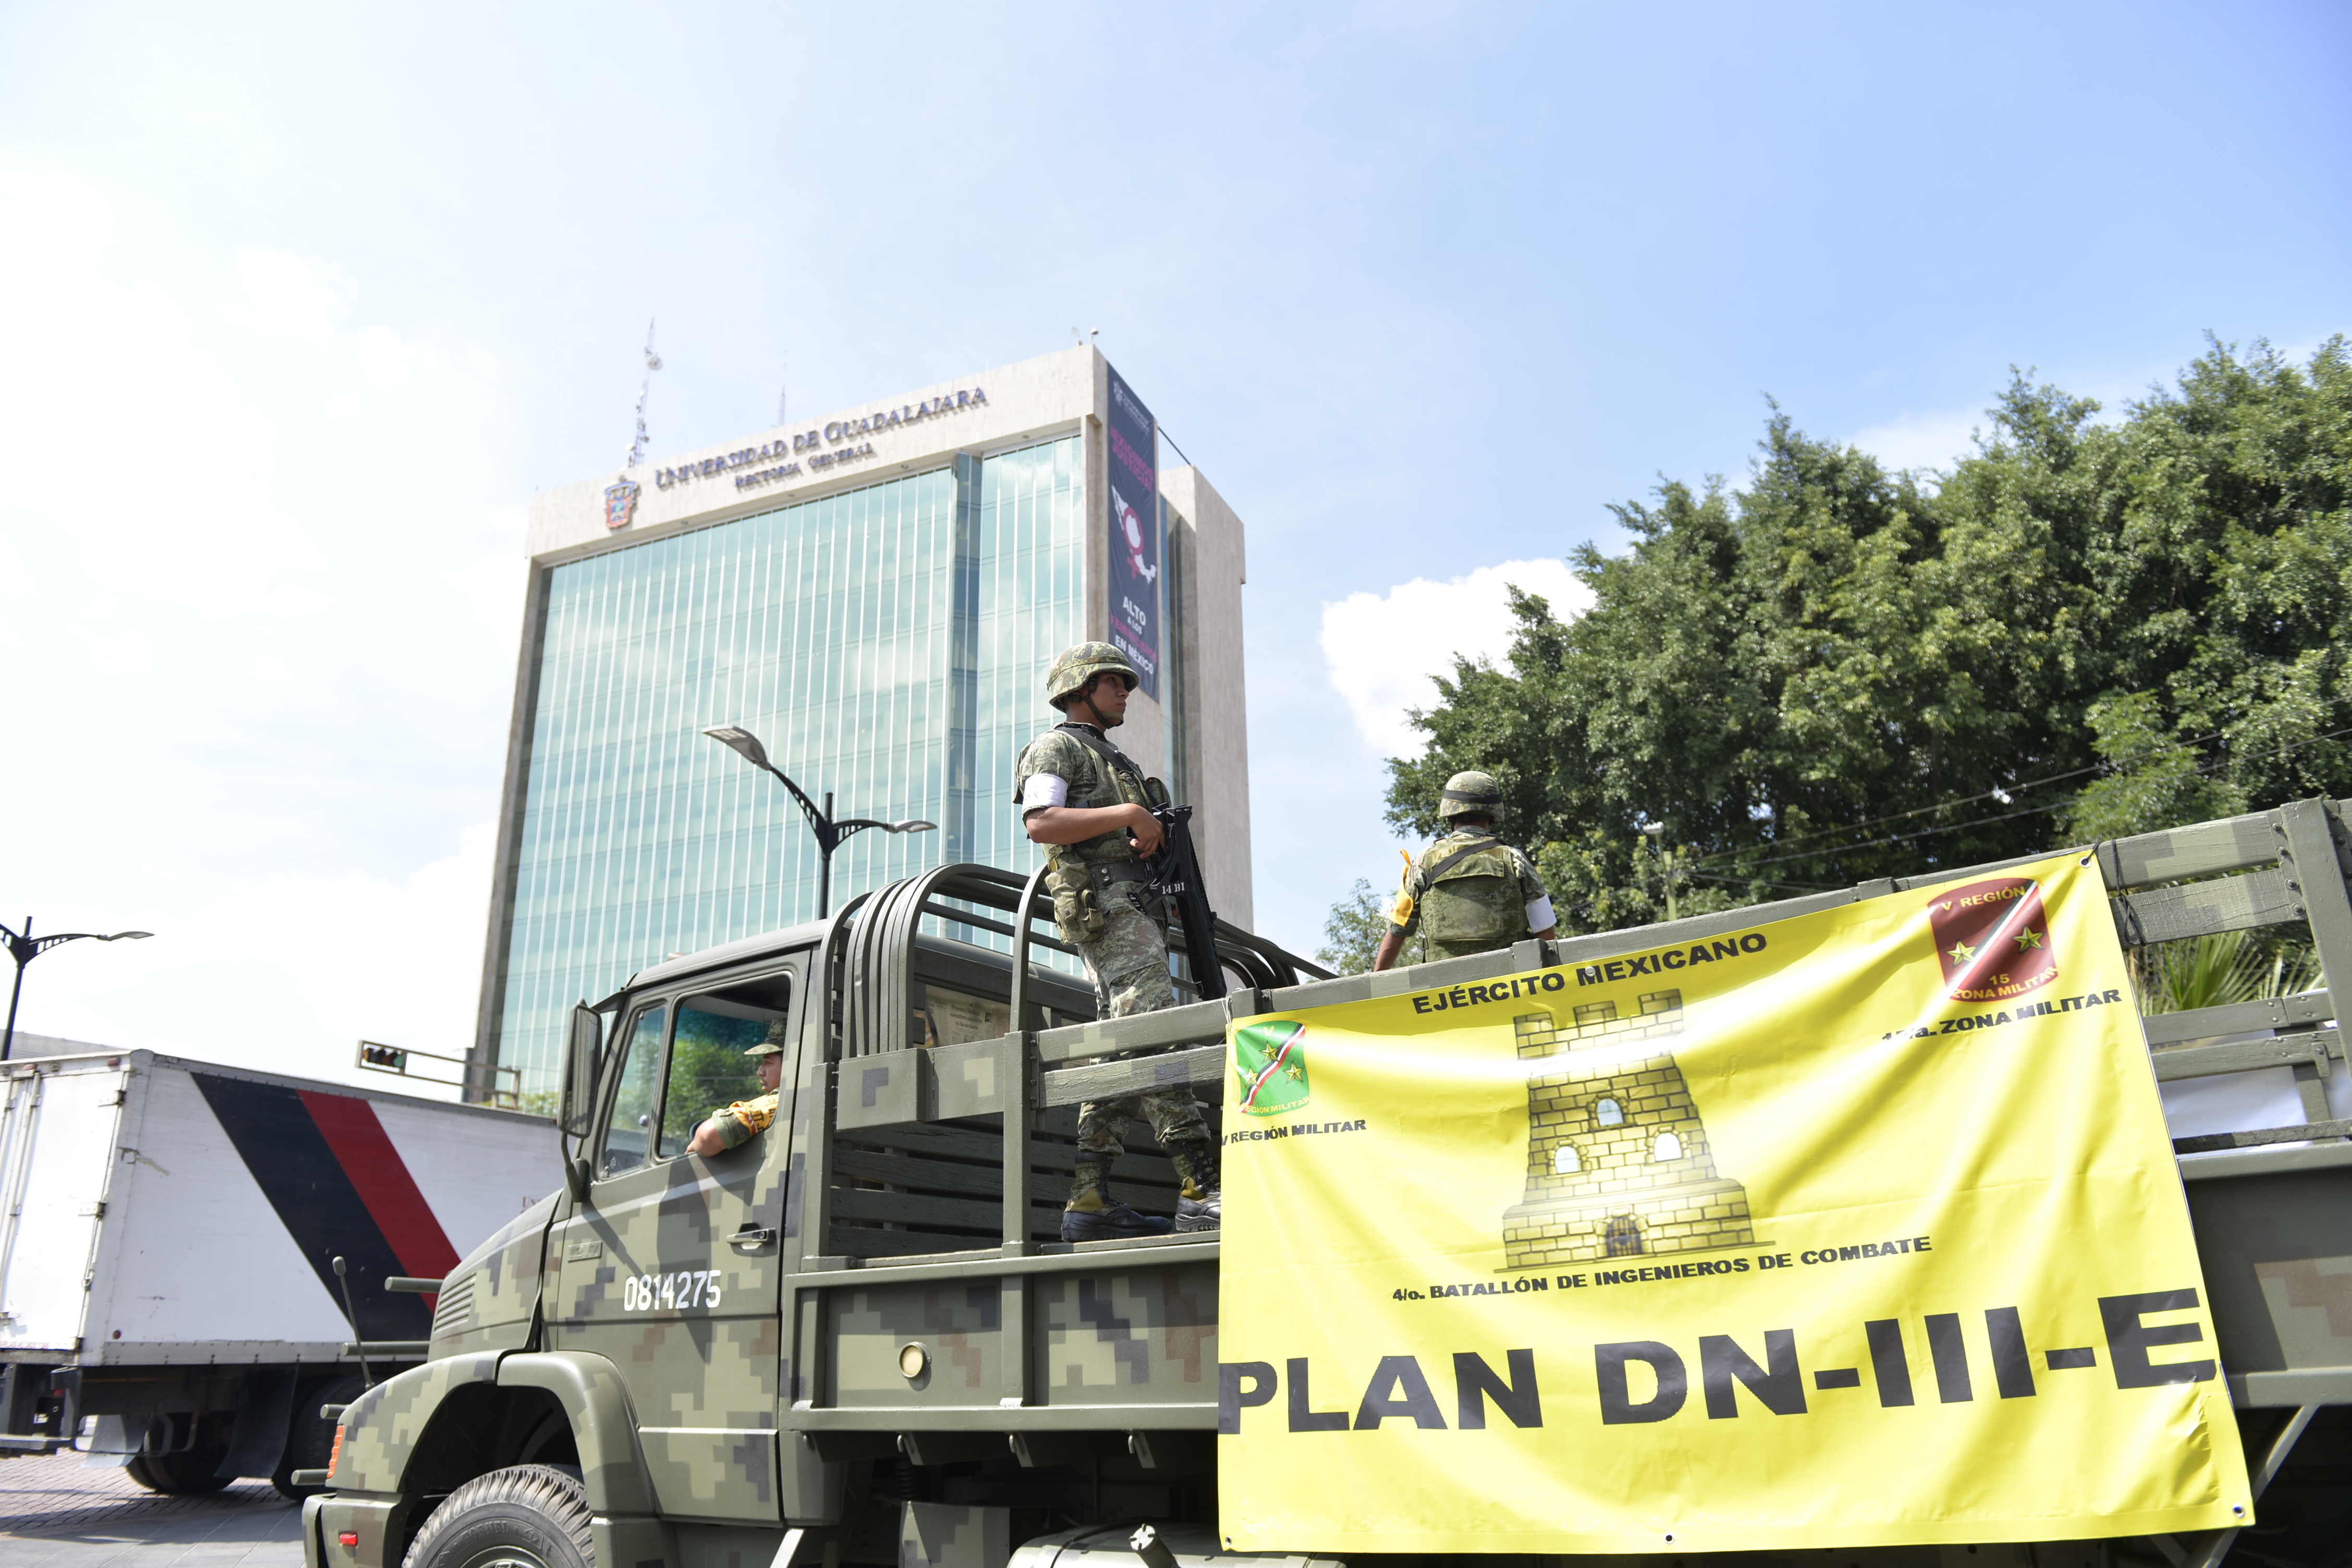 Camion del ejercito militar Mexicano estacionado en la Rambla Cataluña 